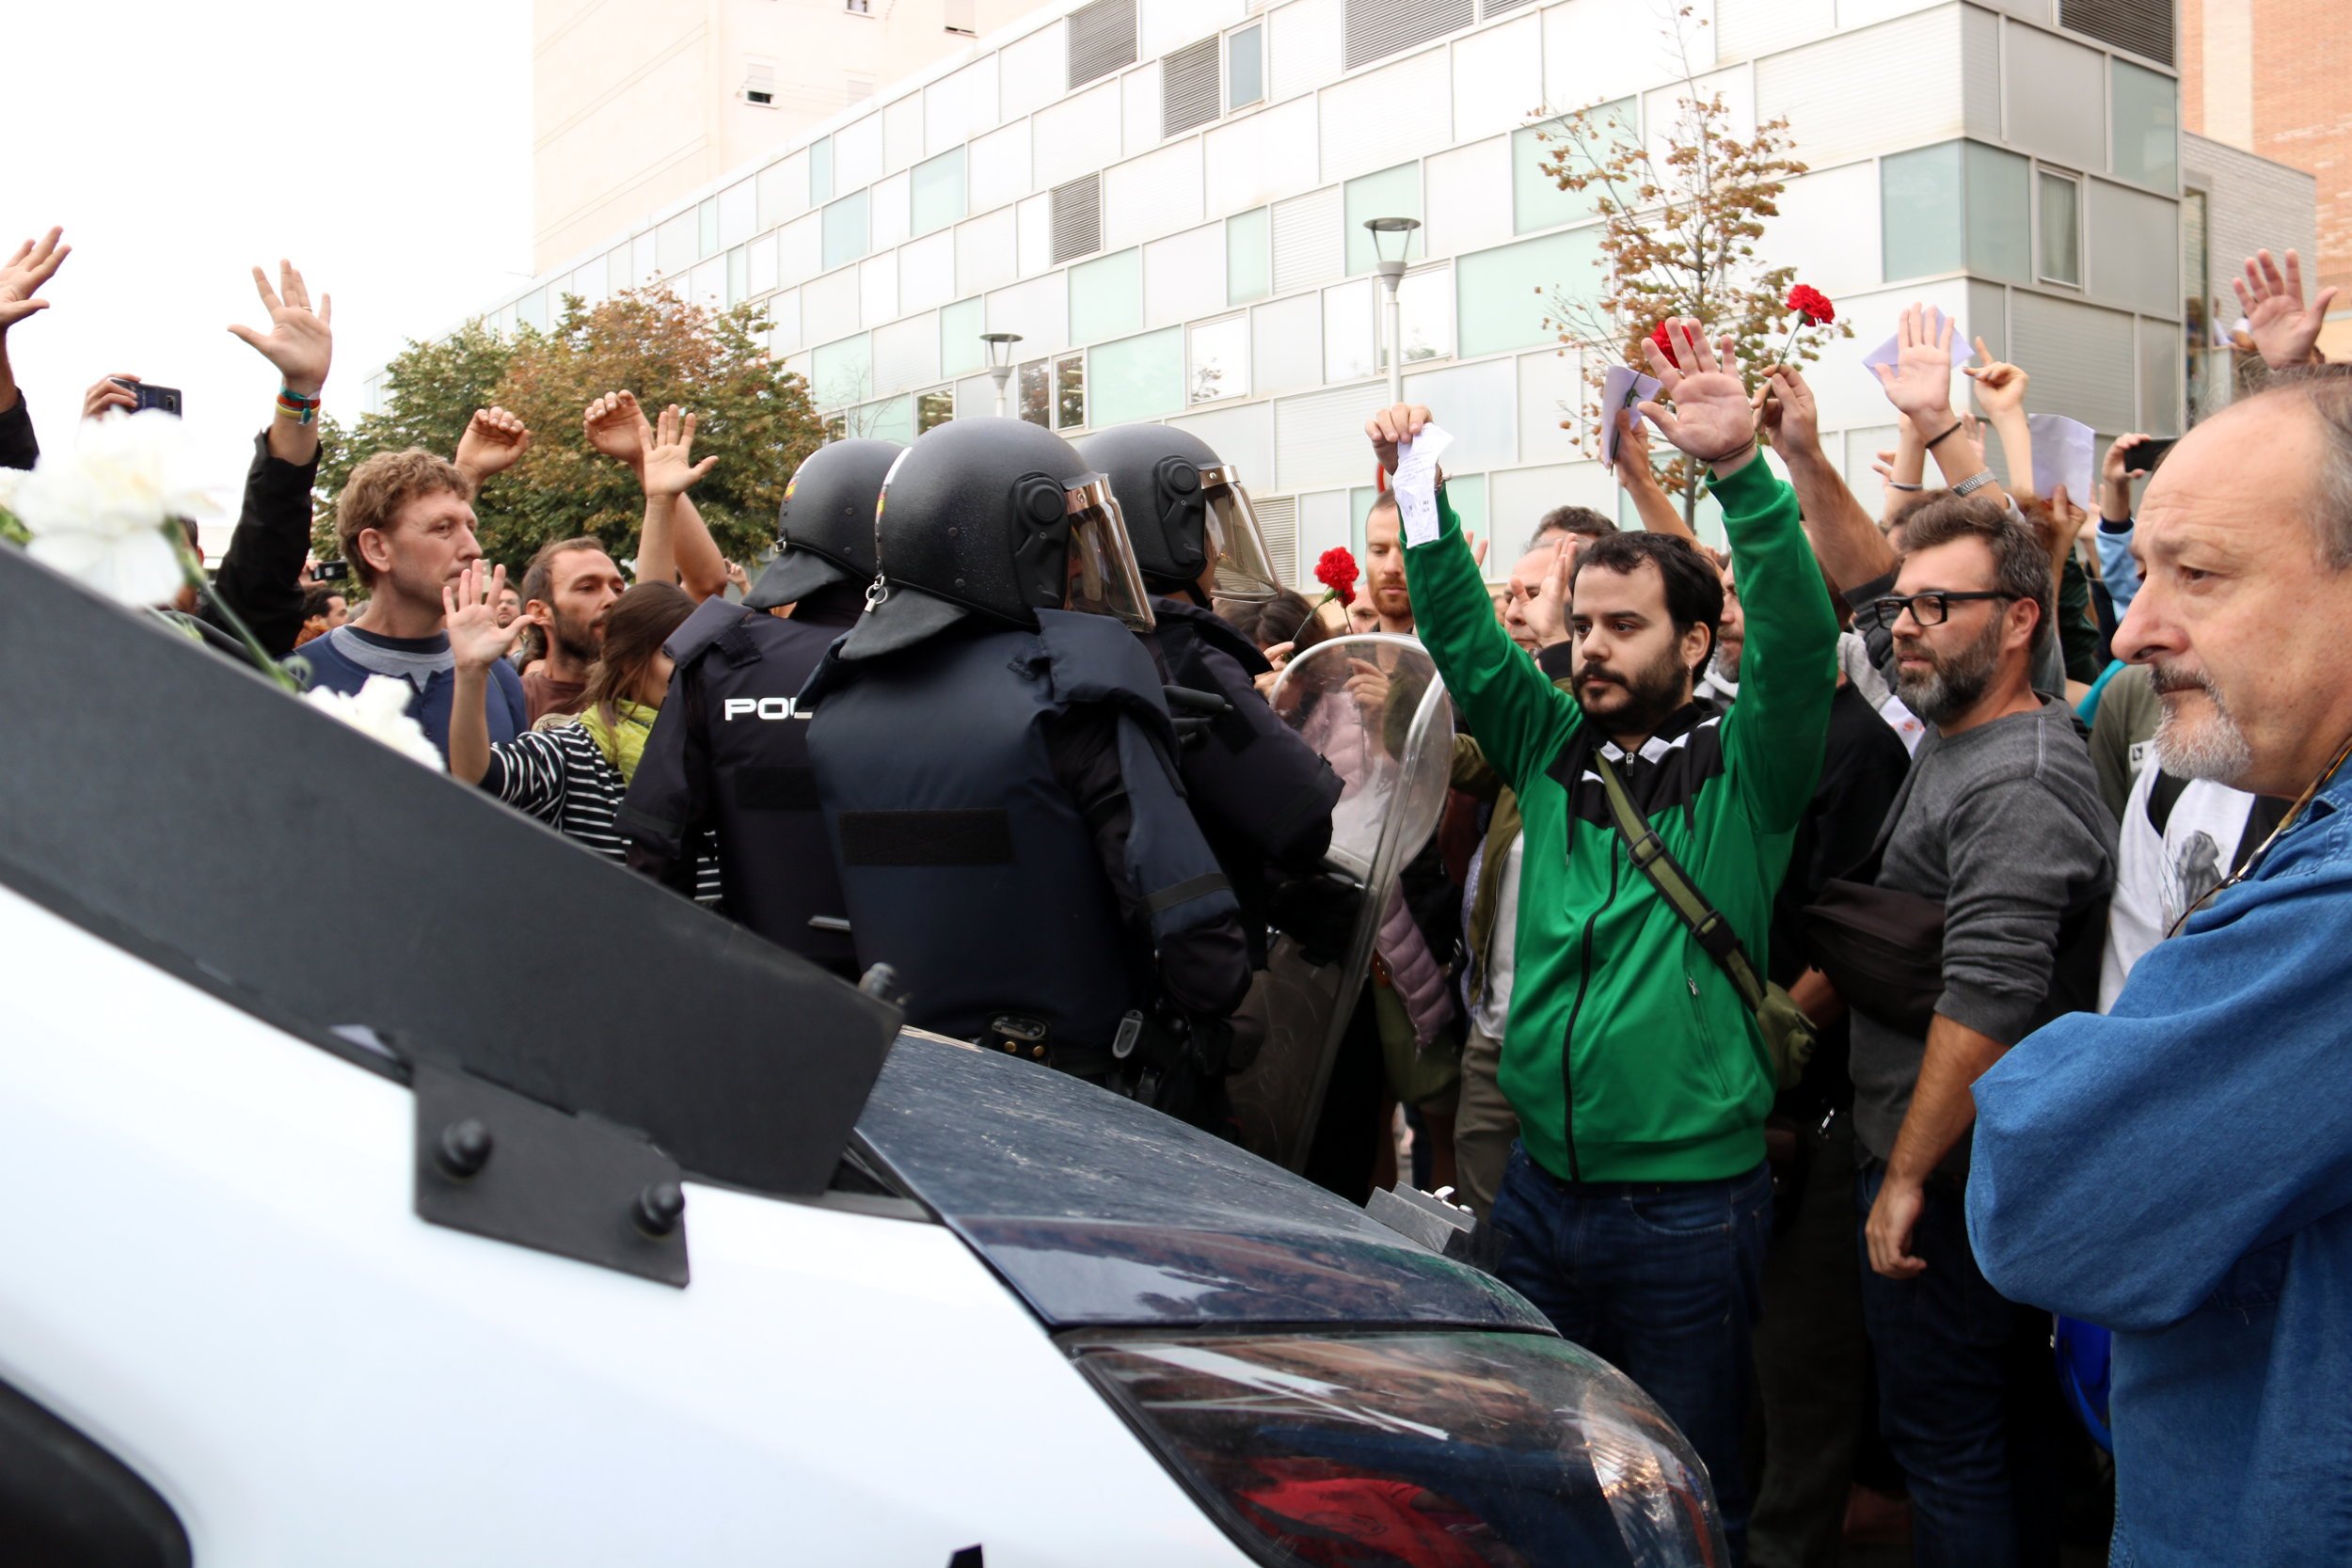 Vídeo: Així va reaccionar la policia espanyola davant l’home infartat l’1-O